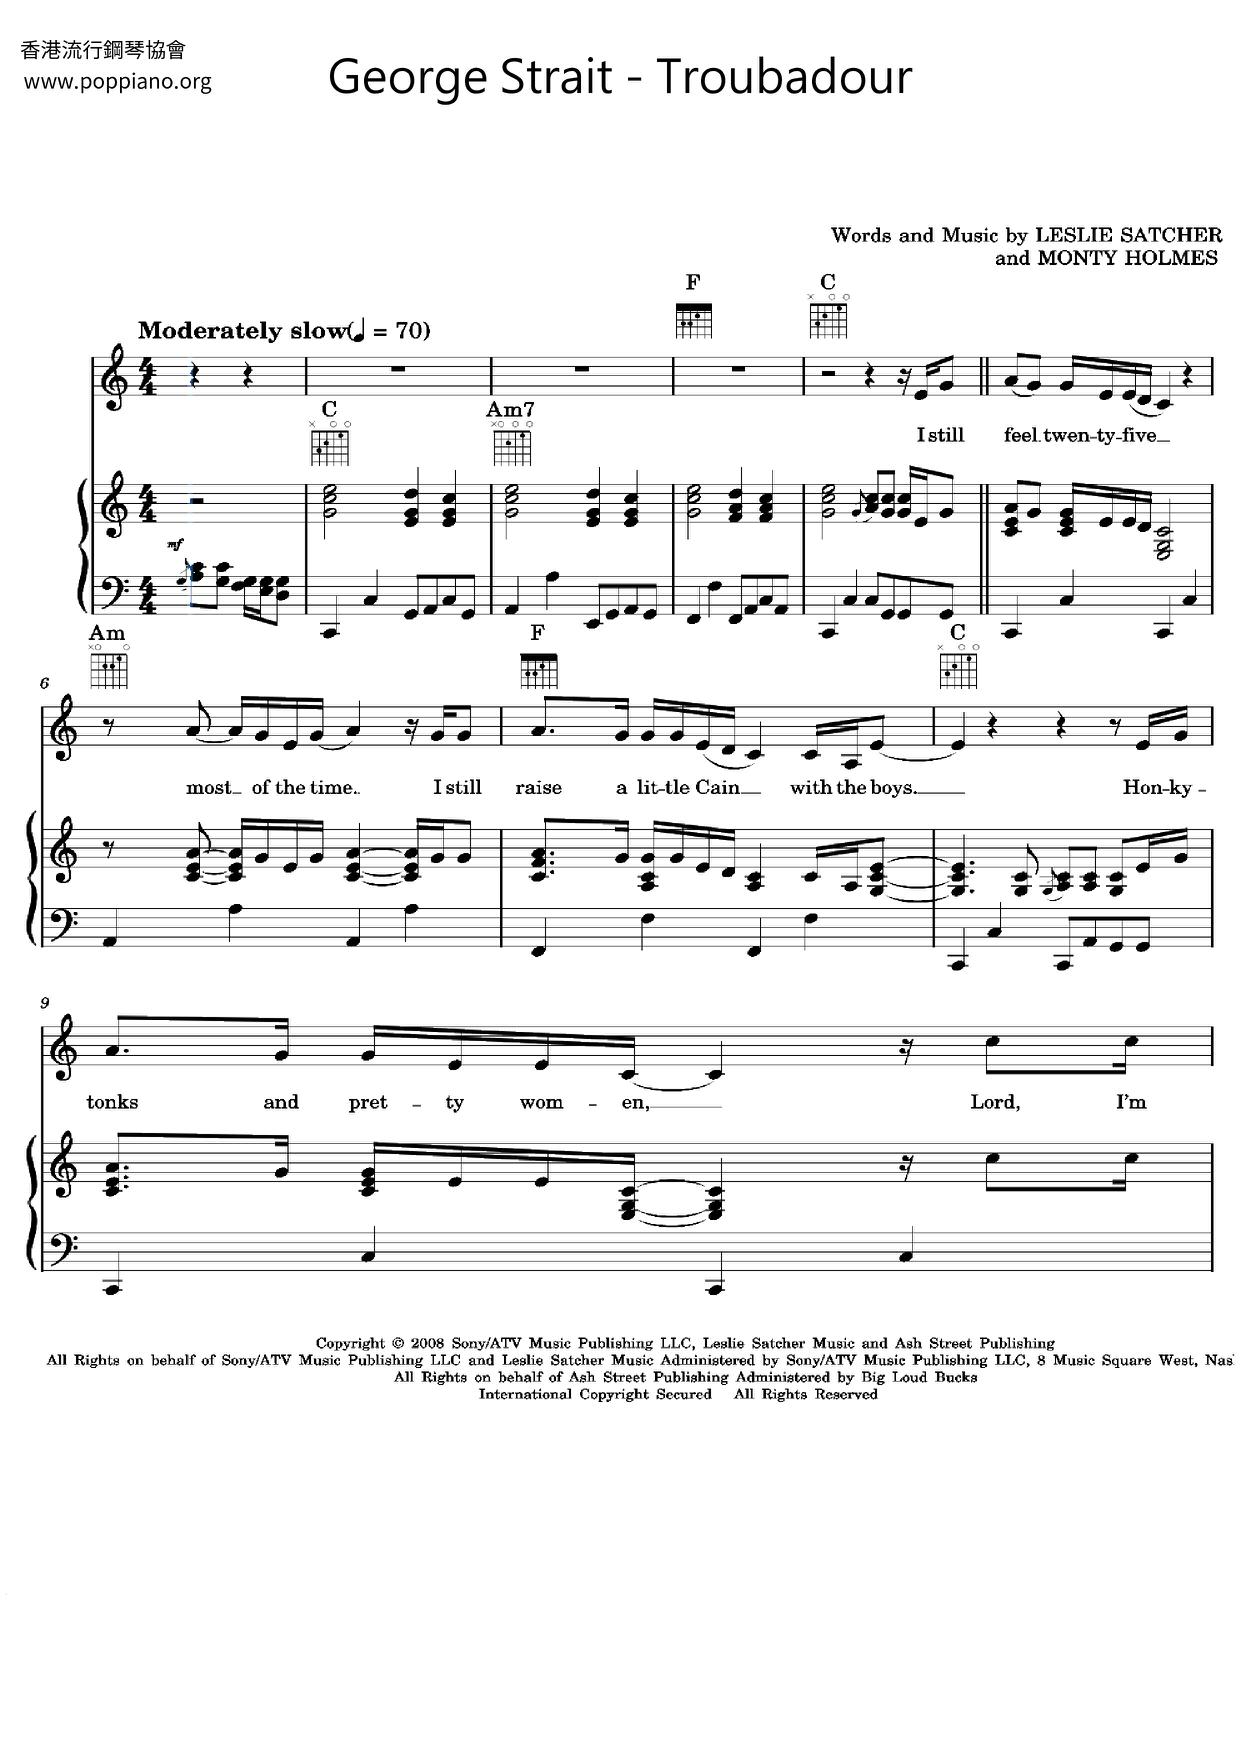 Troubadour Score